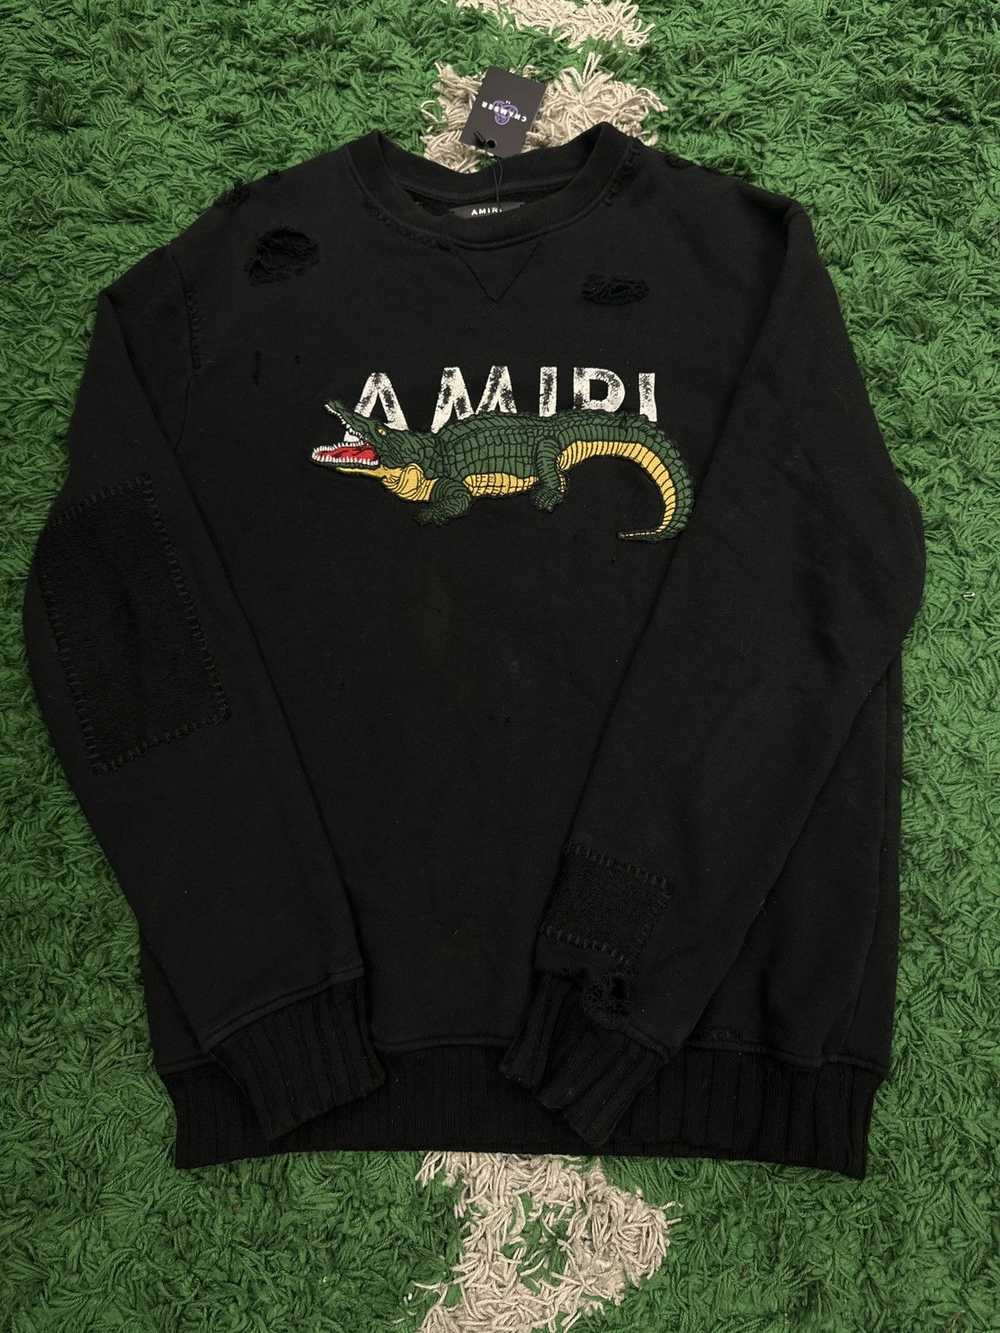 Amiri Amiri Crewneck Sweatshirt Black Crocodile - image 1